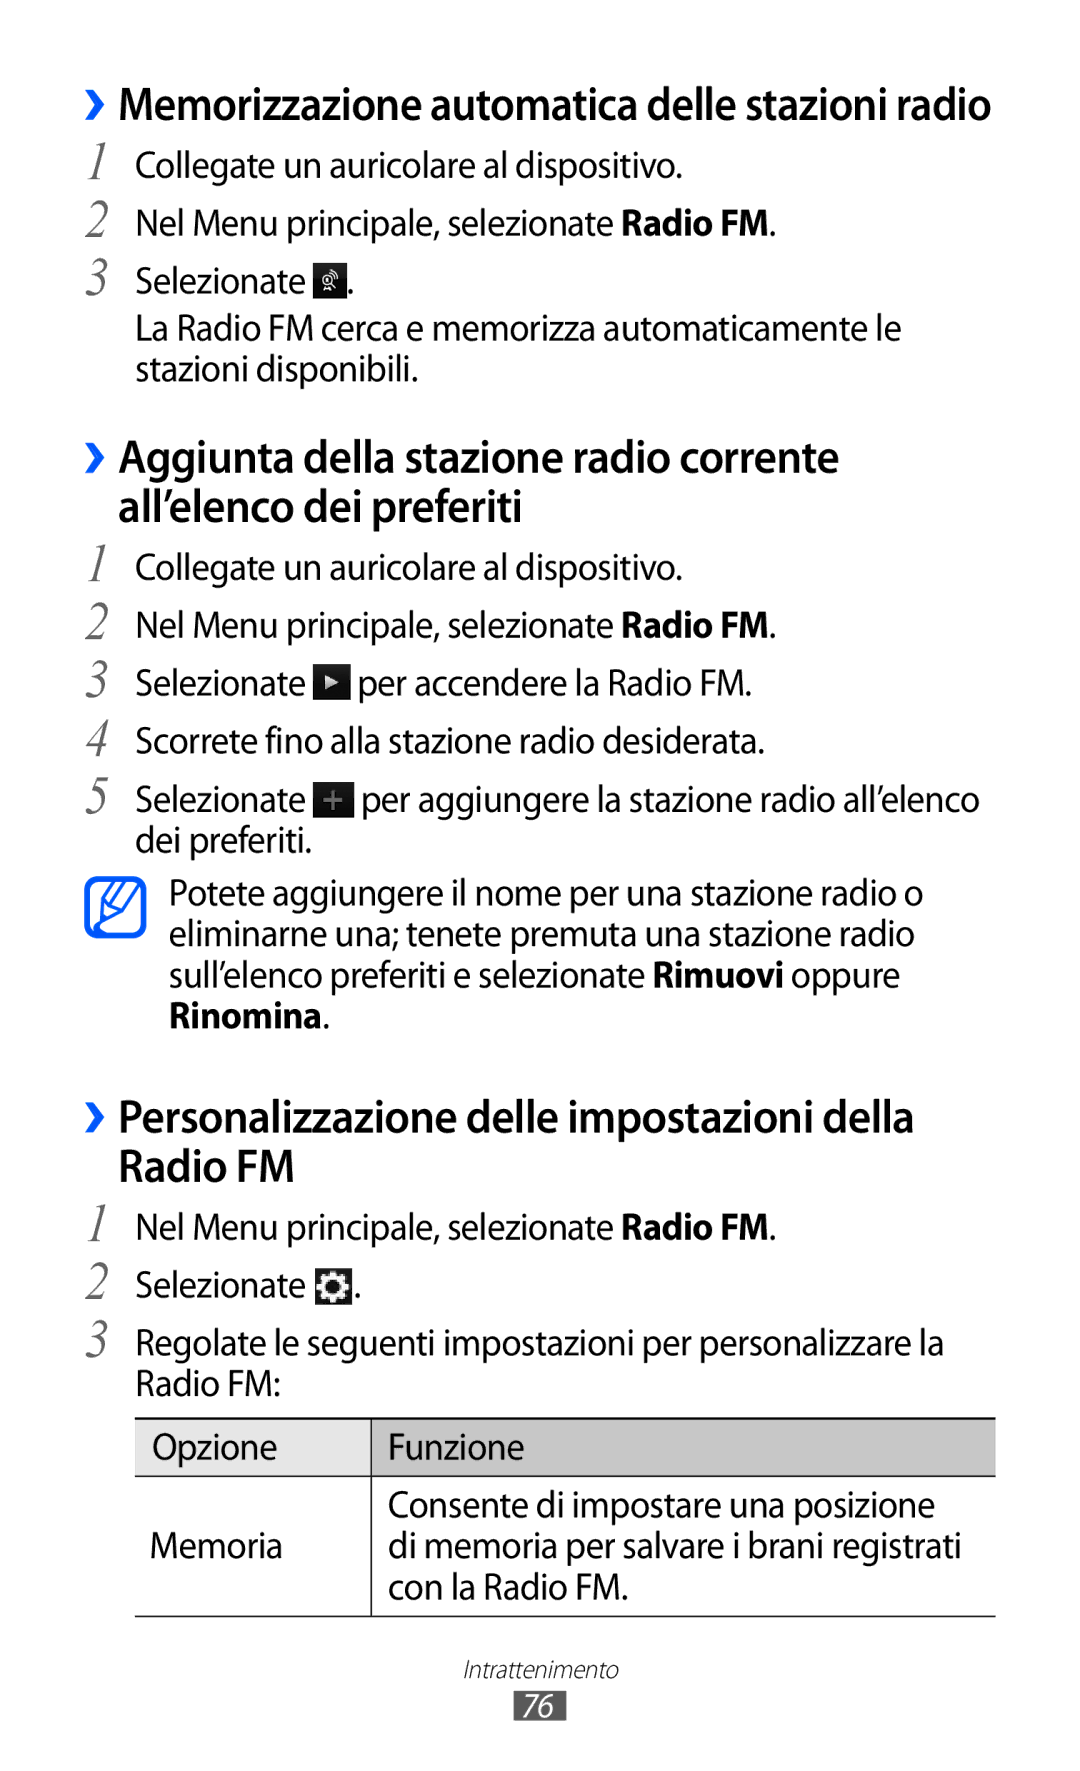 Samsung GT-S8500HKACMF ››Personalizzazione delle impostazioni della Radio FM, Di memoria per salvare i brani registrati 